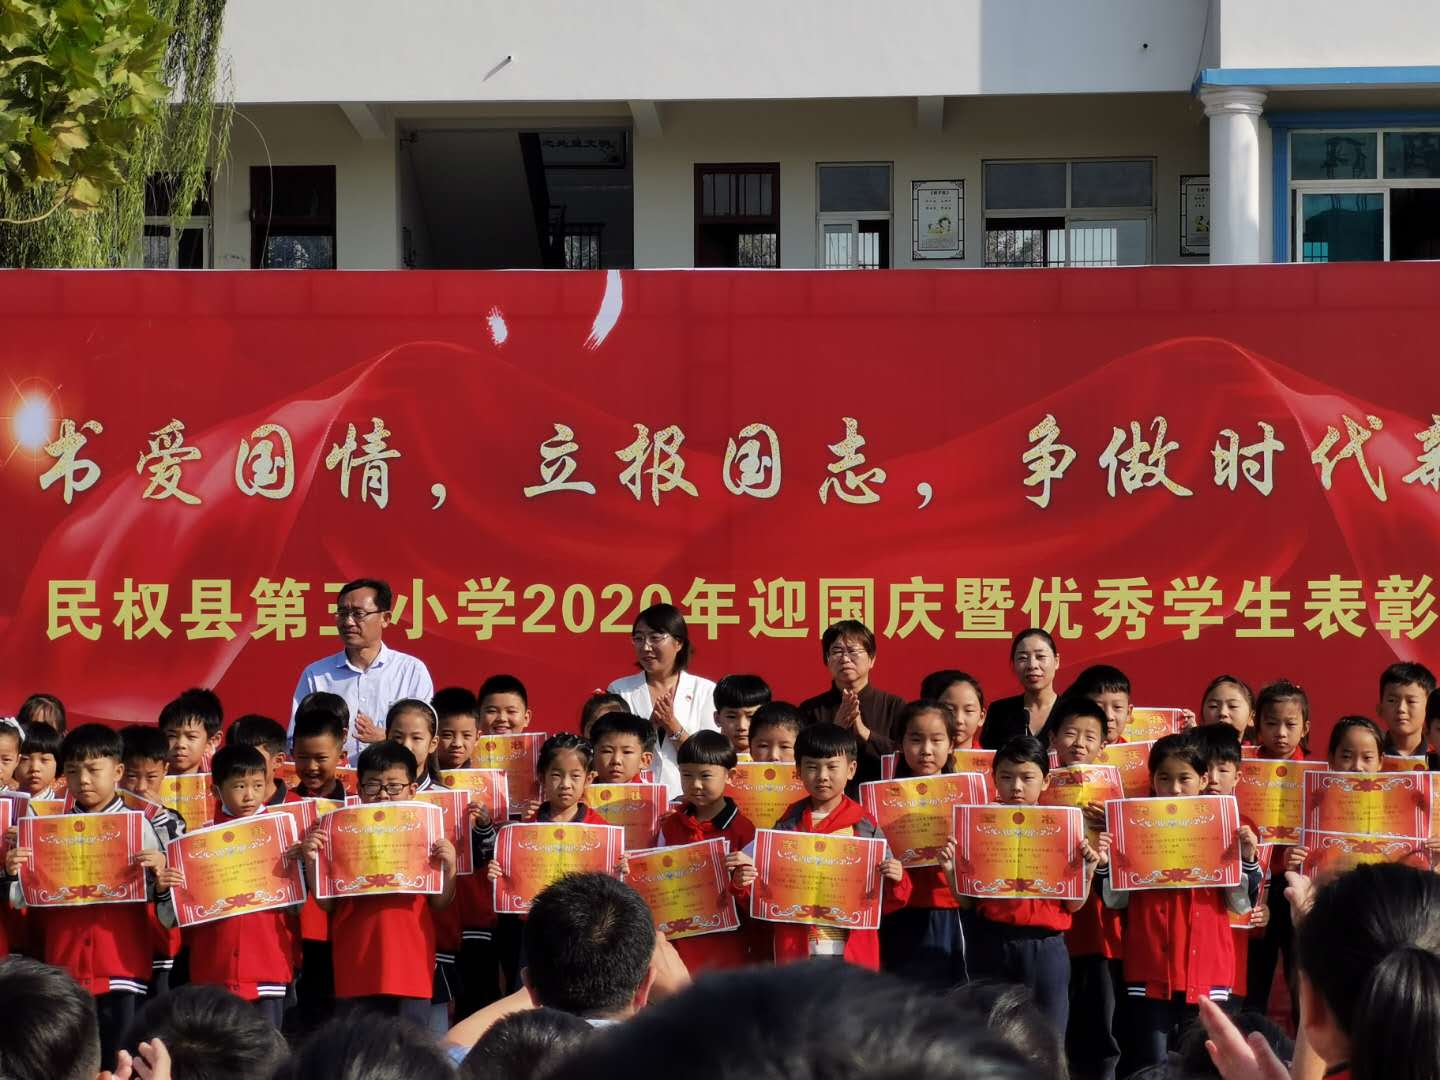 民权县第三小学隆重举行2020年迎国庆暨优秀学生表彰大会